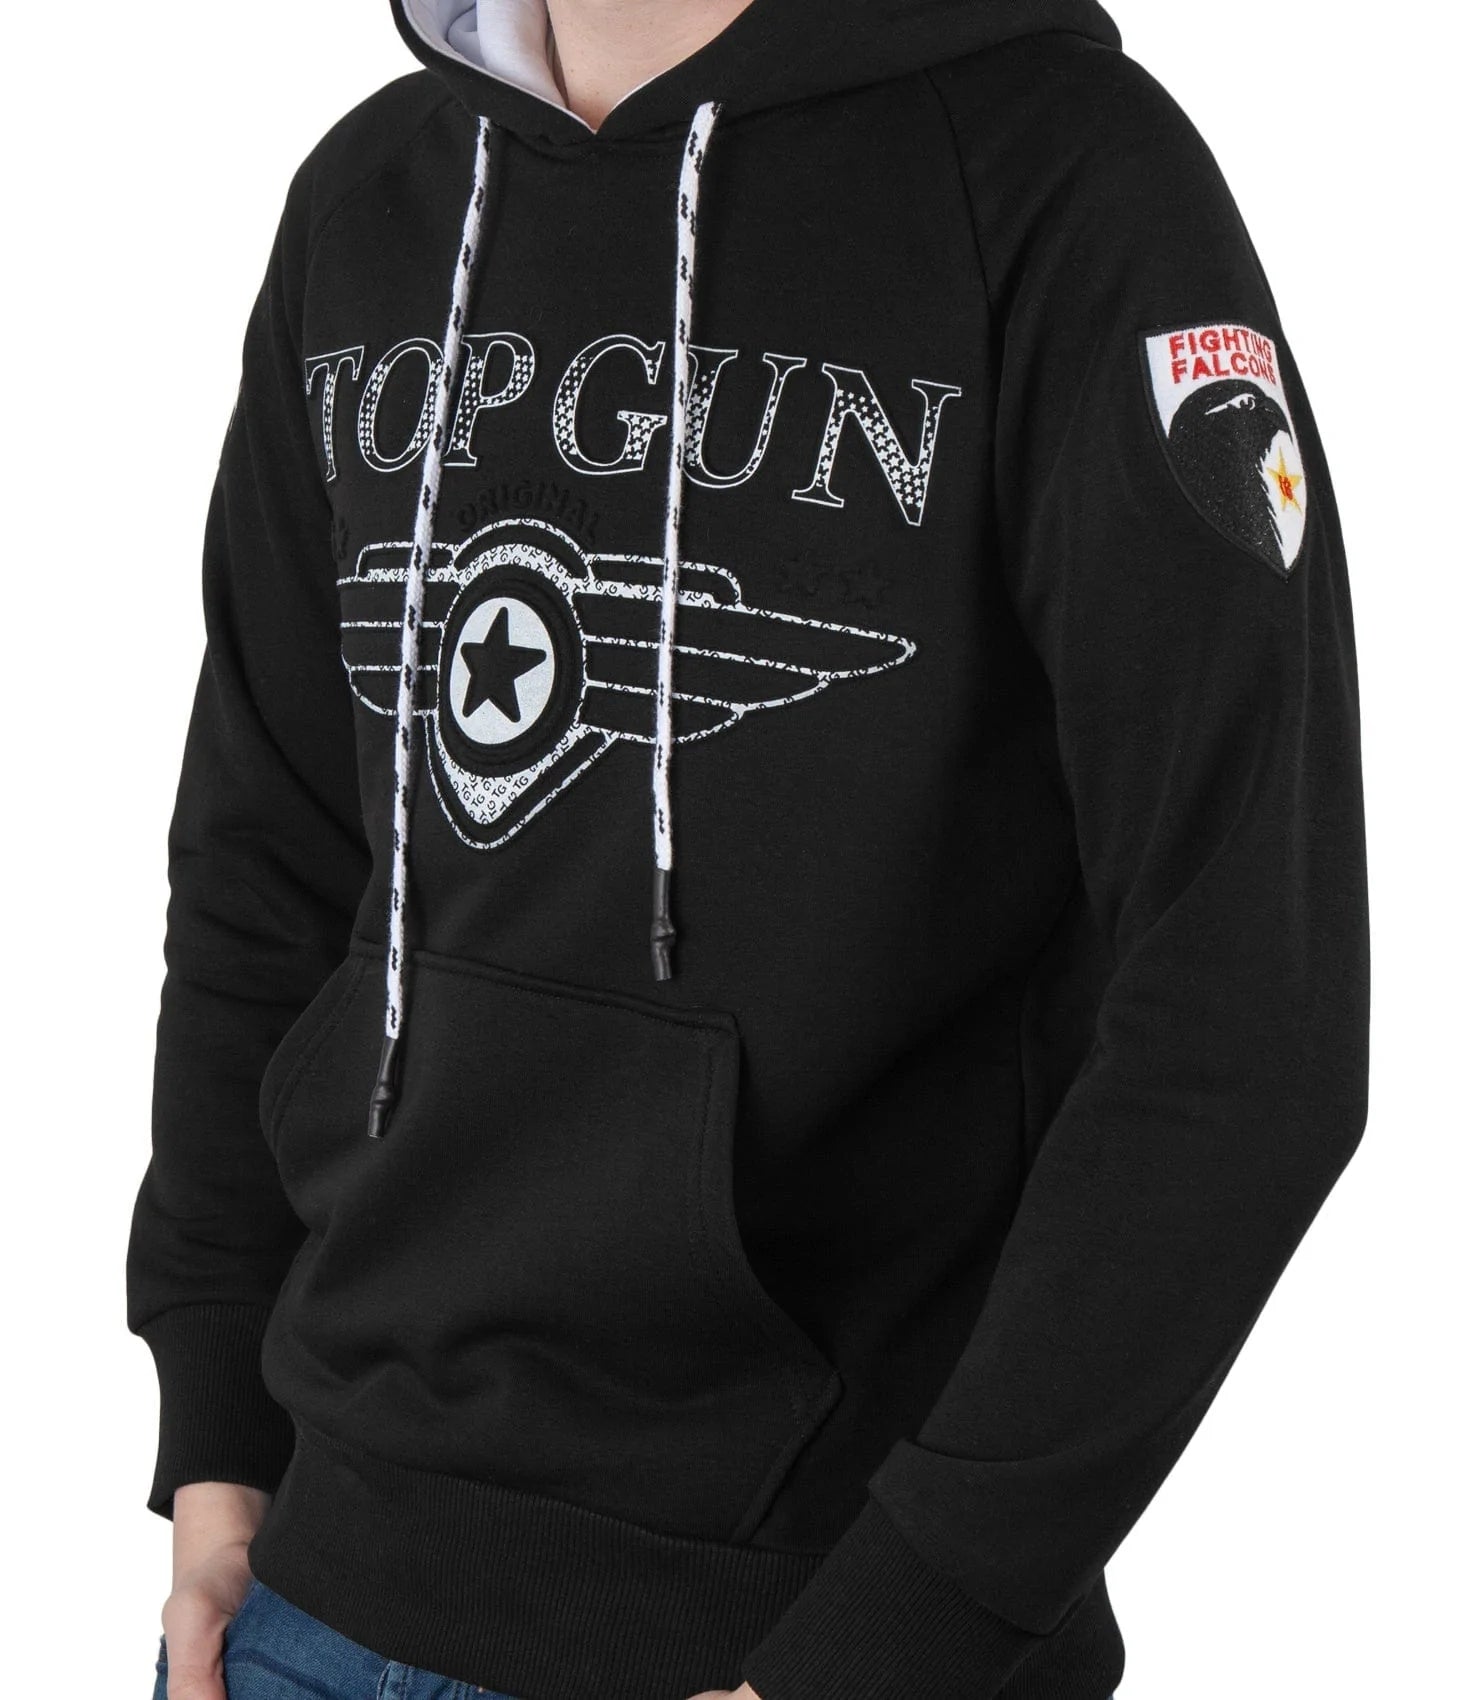 Top GunHoodie sweatshirt "Defend", black